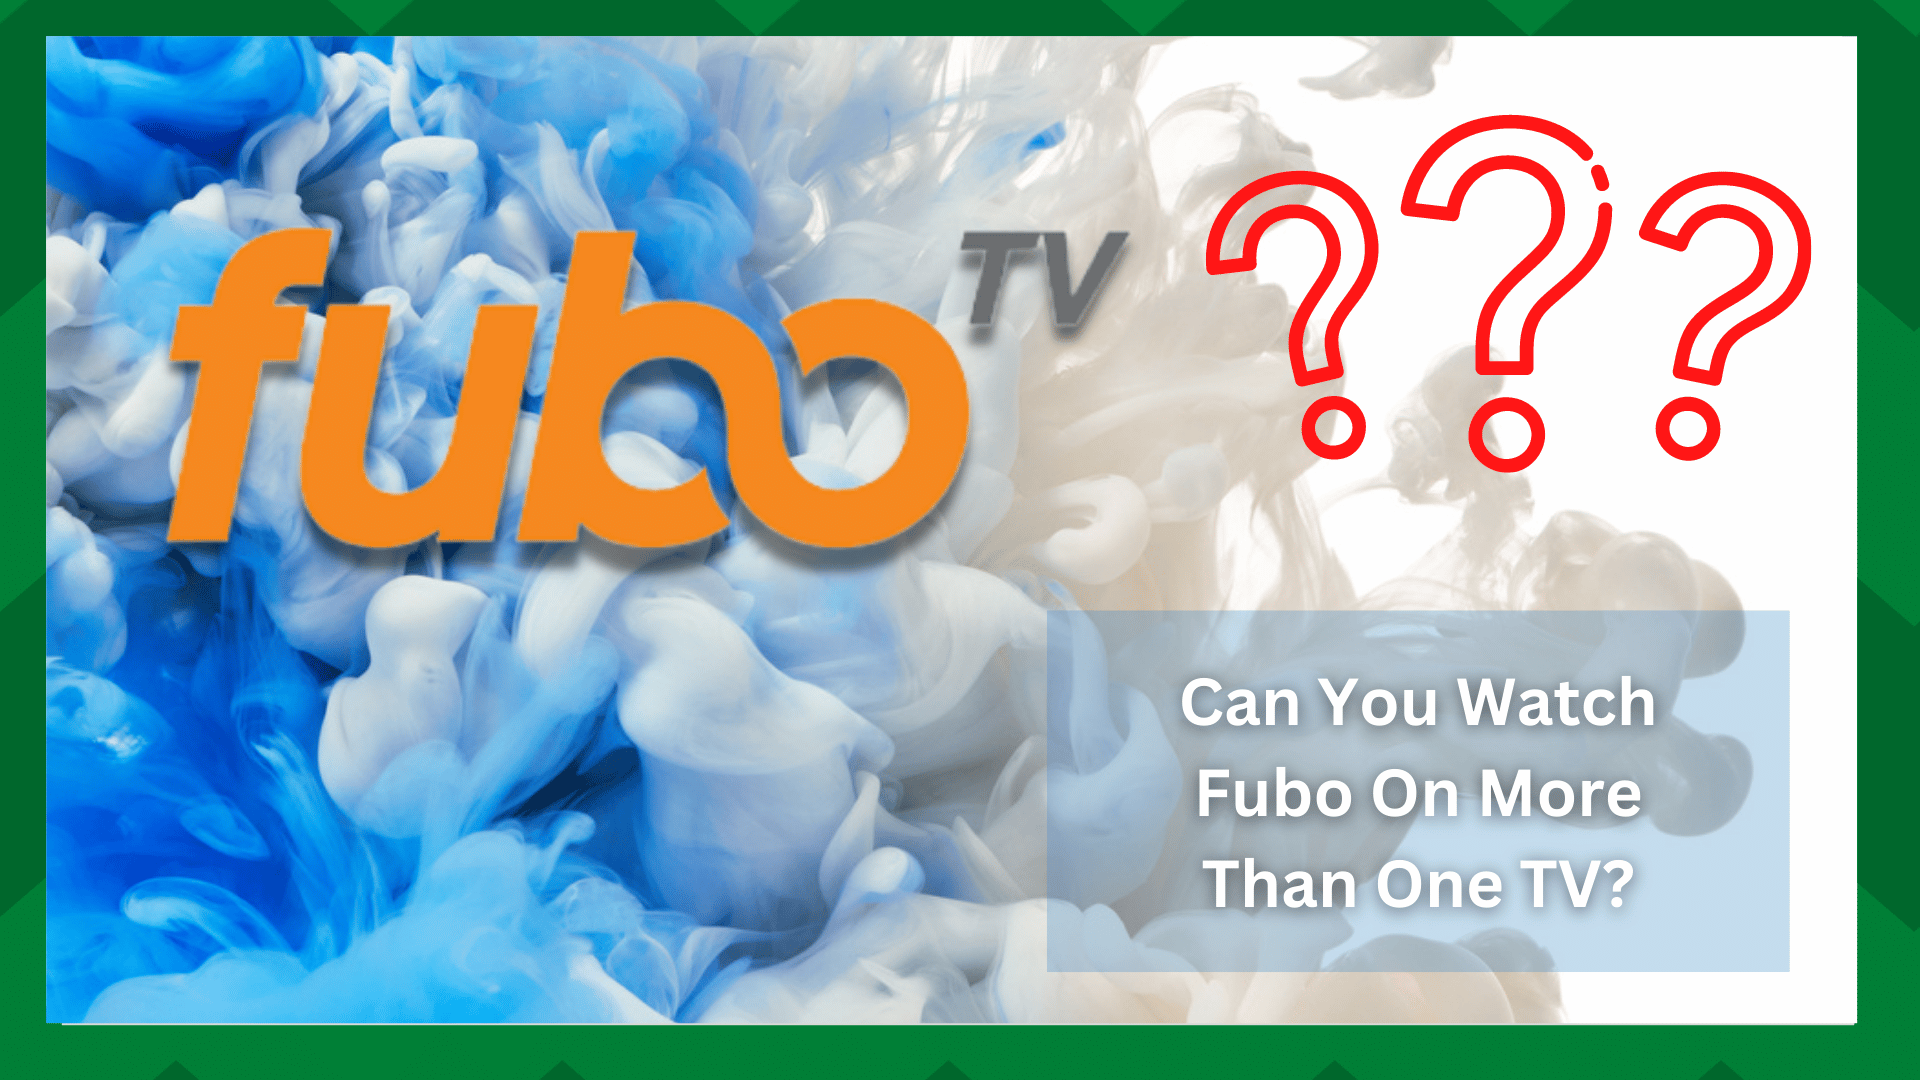 შეგიძლიათ უყუროთ fubo-ს ერთზე მეტ ტელევიზორზე? (8 ნაბიჯი)